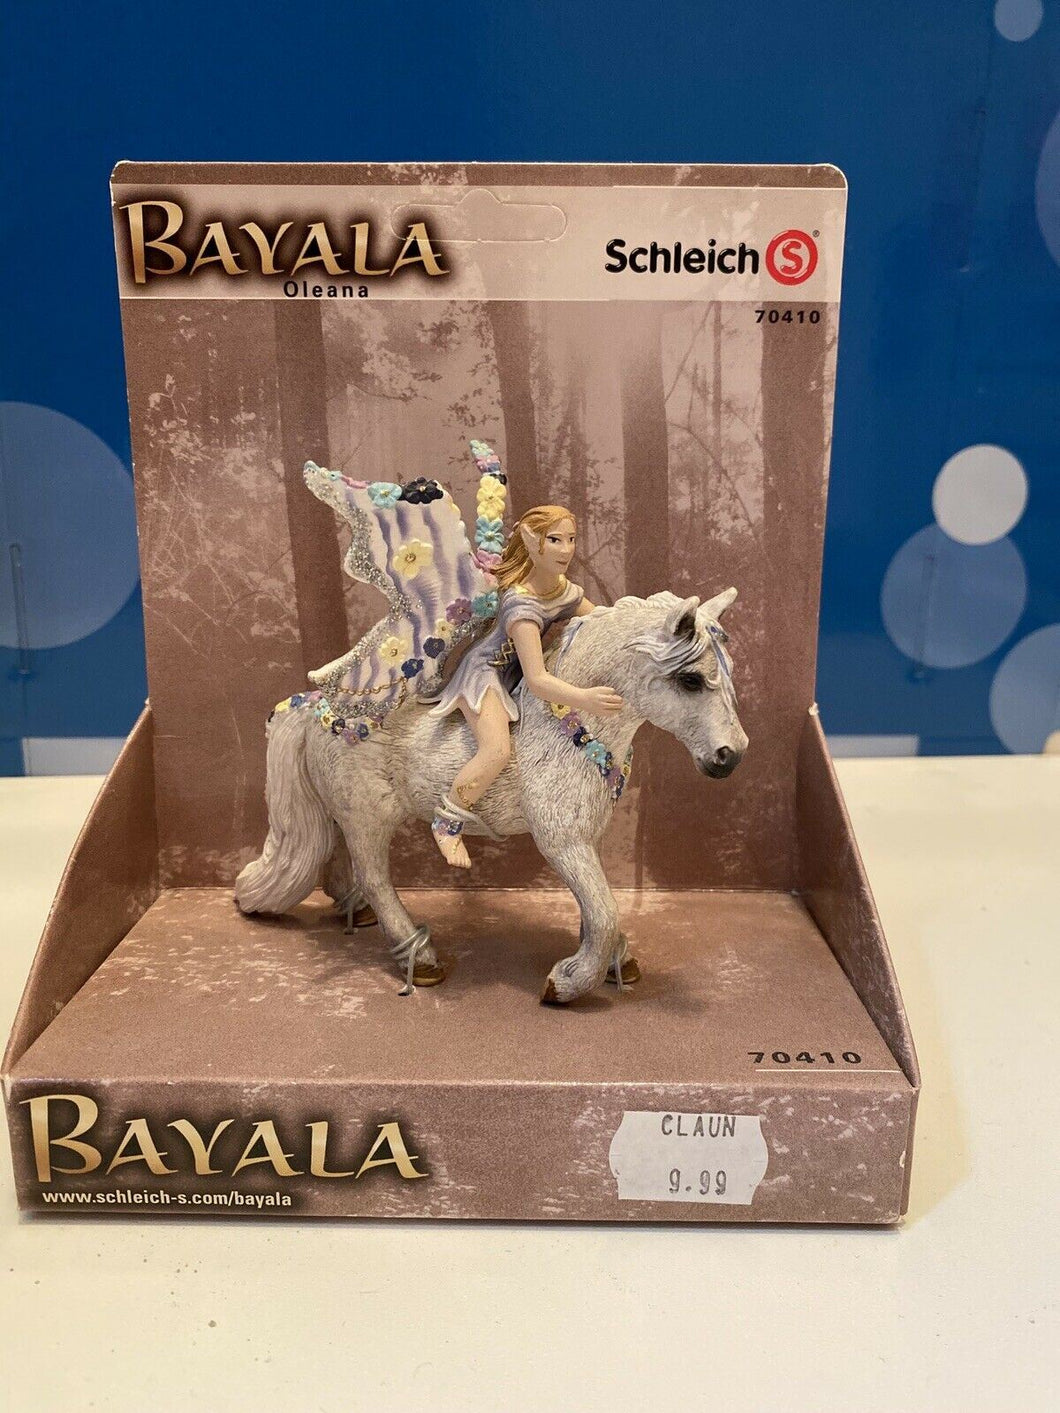 Bayala Orleans 70410 Schleich